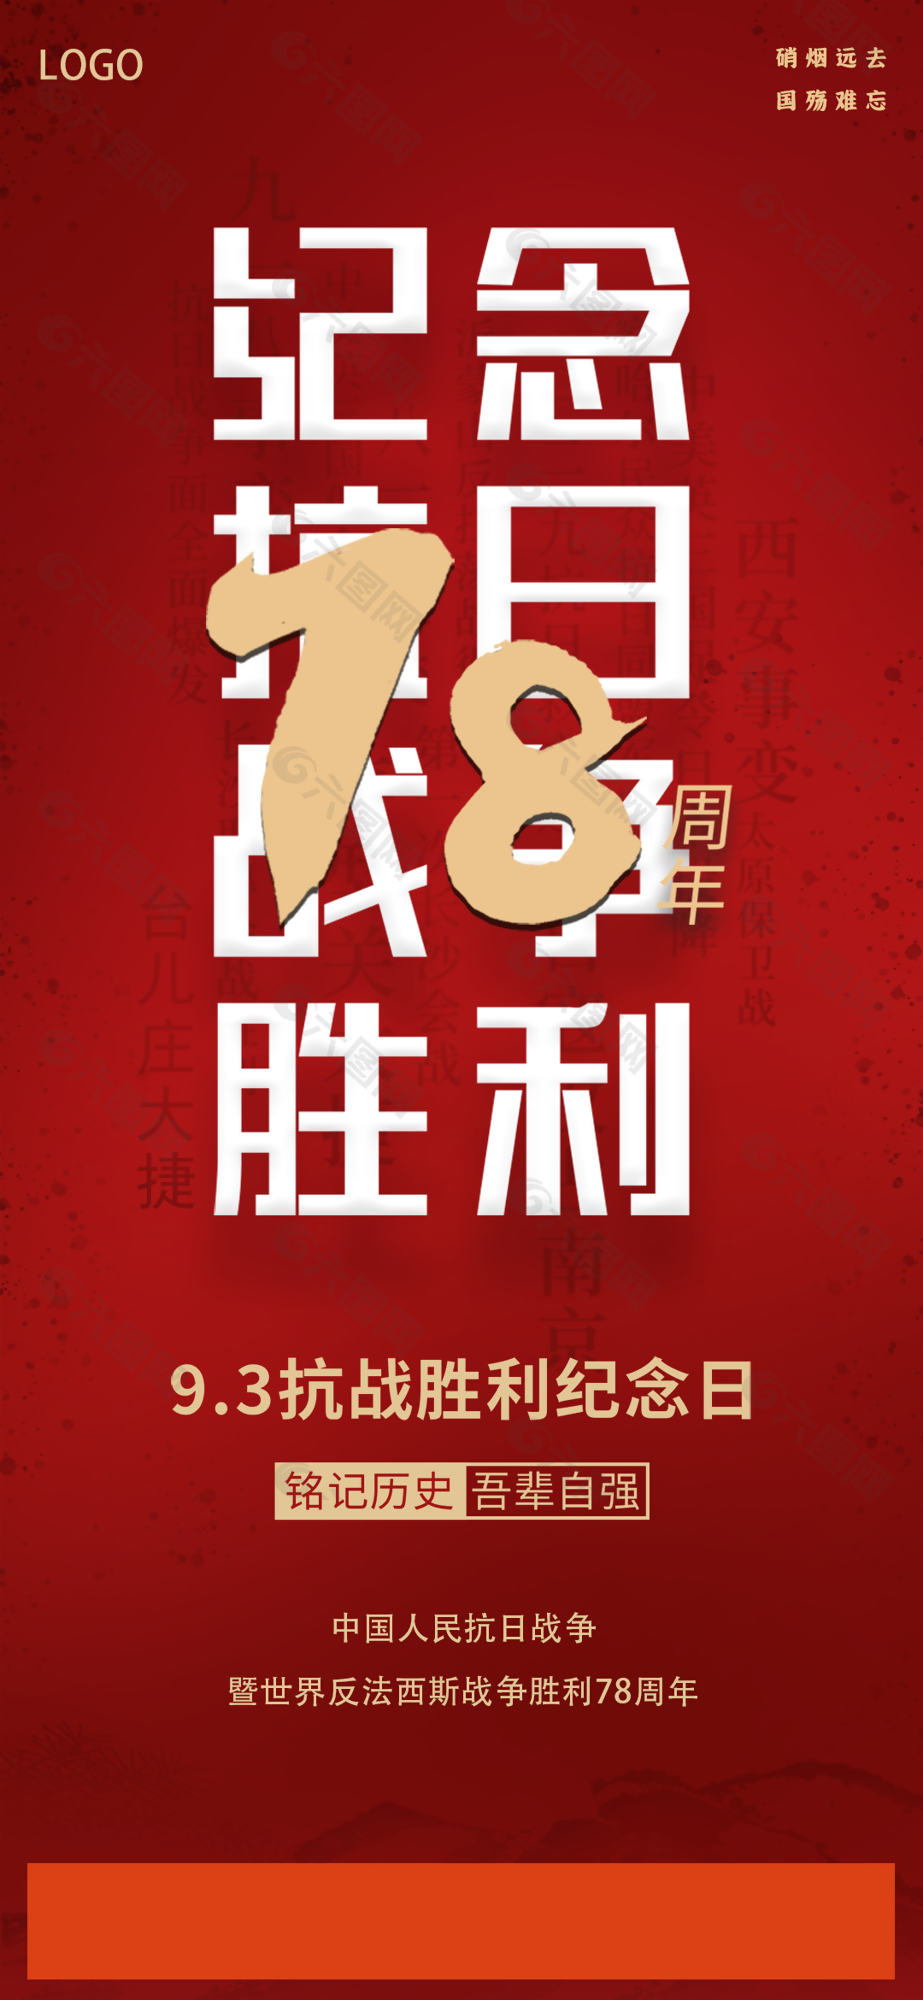 中国红纪念抗日战争胜利党建海报图设计